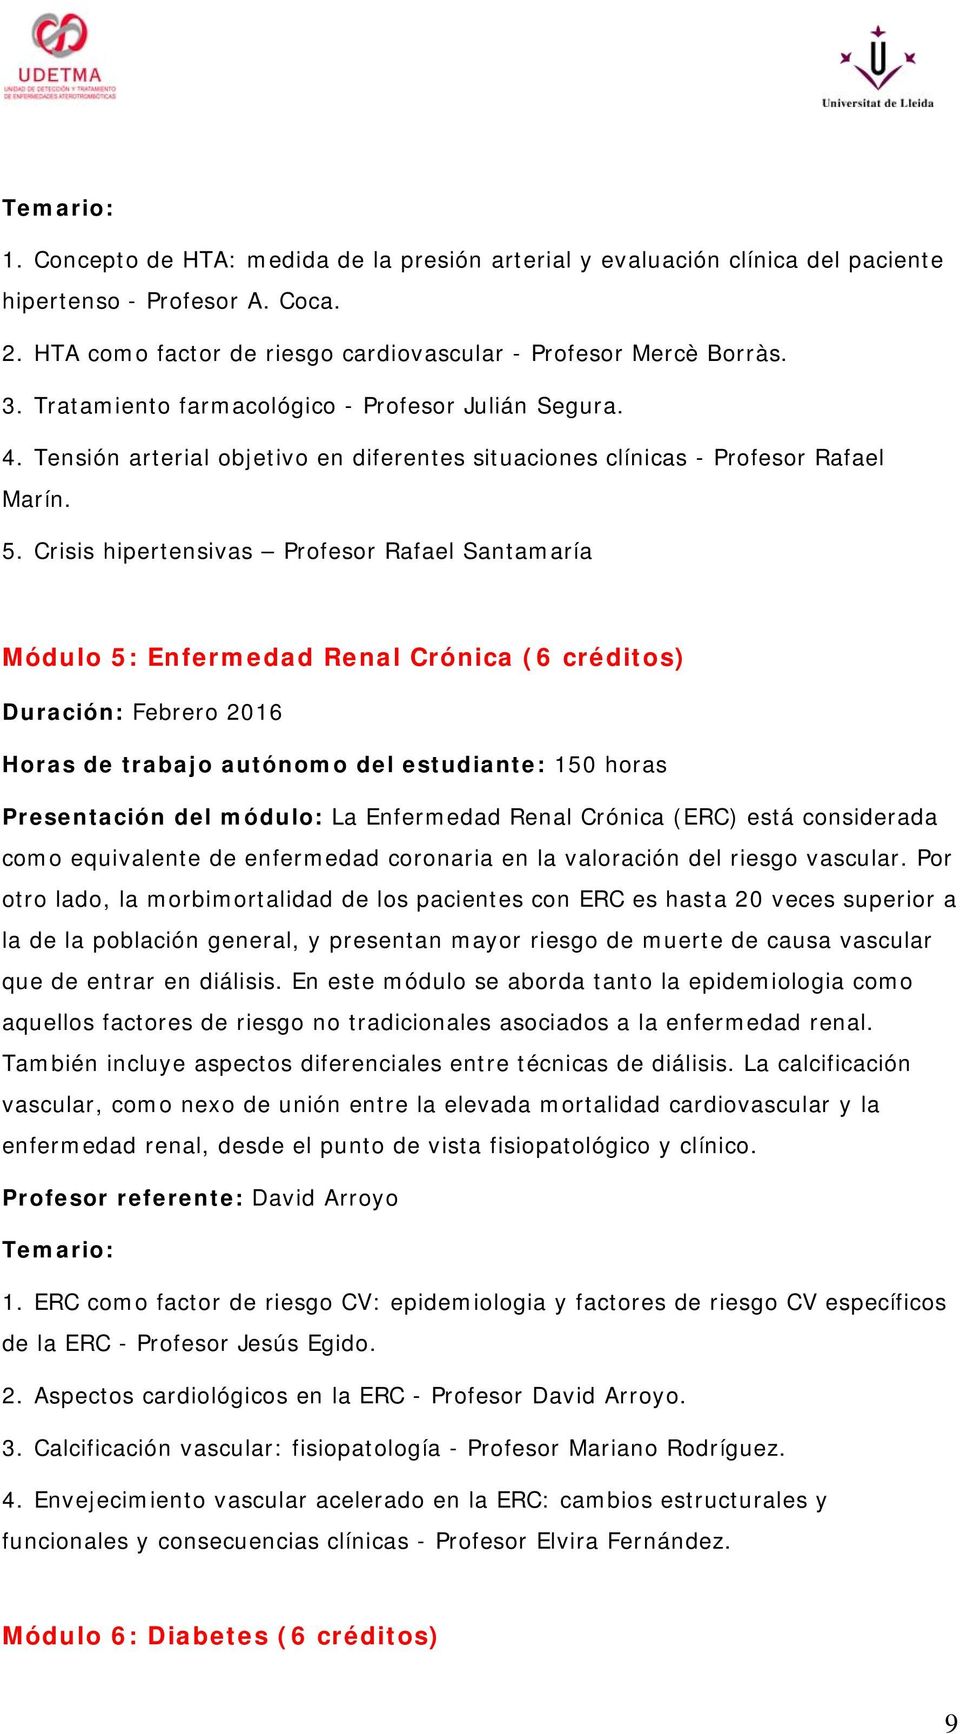 Crisis hipertensivas Profesor Rafael Santamaría Módulo 5: Enfermedad Renal Crónica (6 créditos) Duración: Febrero 2016 Presentación del módulo: La Enfermedad Renal Crónica (ERC) está considerada como